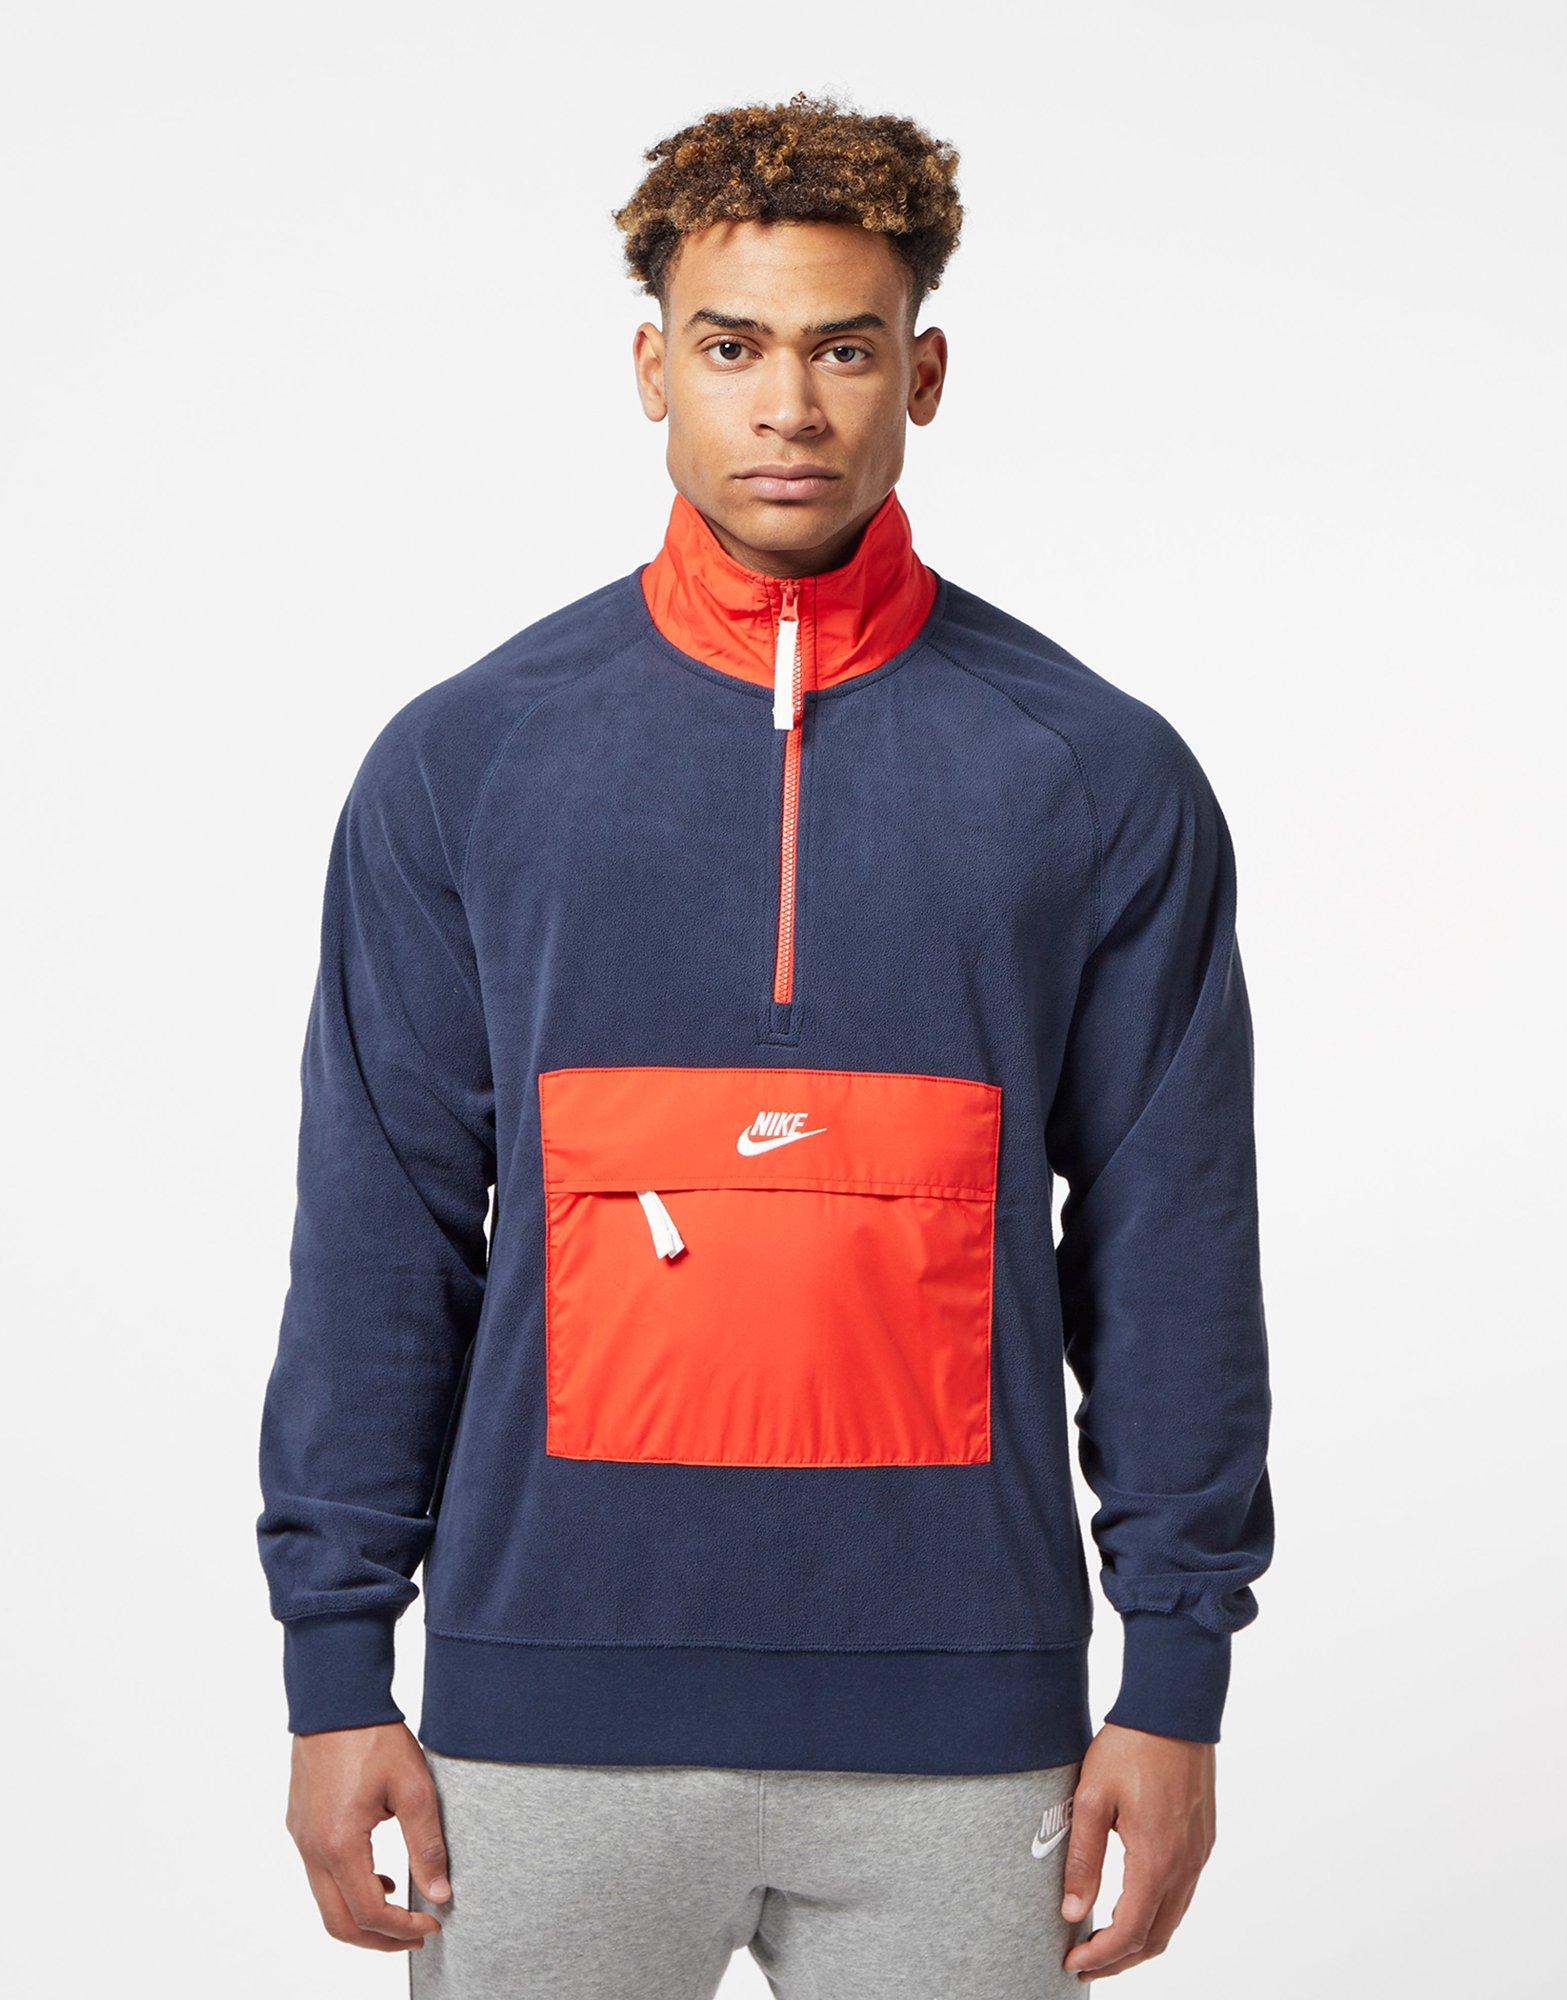 Blue Nike Fleece Sweatshirt | scotts Menswear